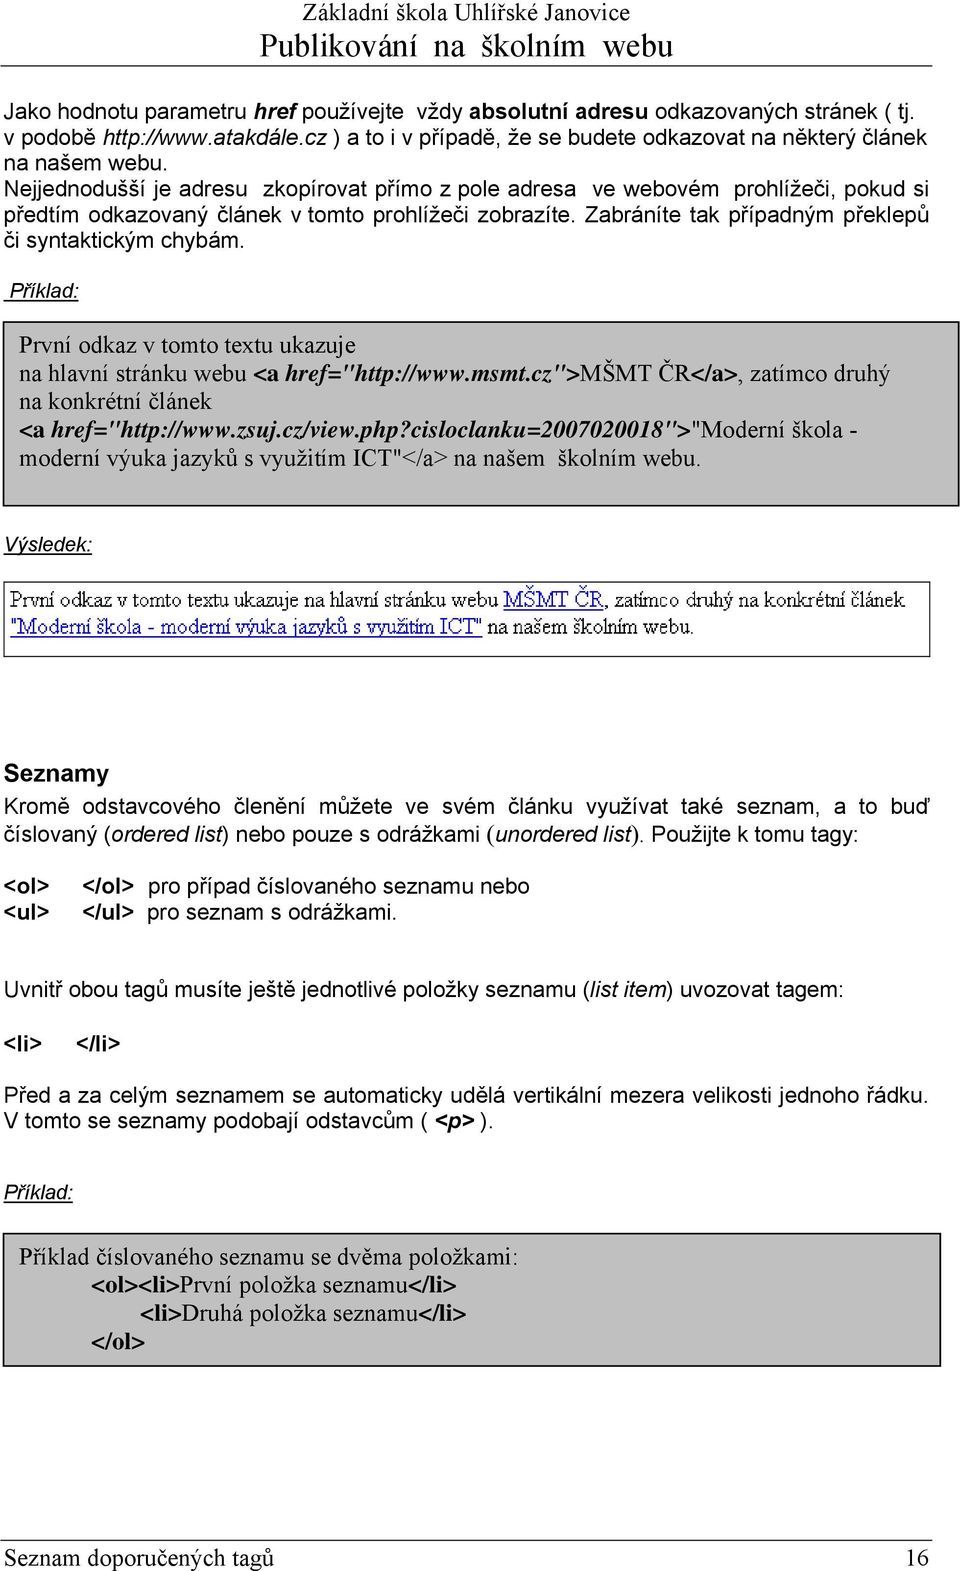 Příklad: První odkaz v tomto textu ukazuje na hlavní stránku webu <a href="http://www.msmt.cz">mšmt ČR</a>, zatímco druhý na konkrétní článek <a href="http://www.zsuj.cz/view.php?